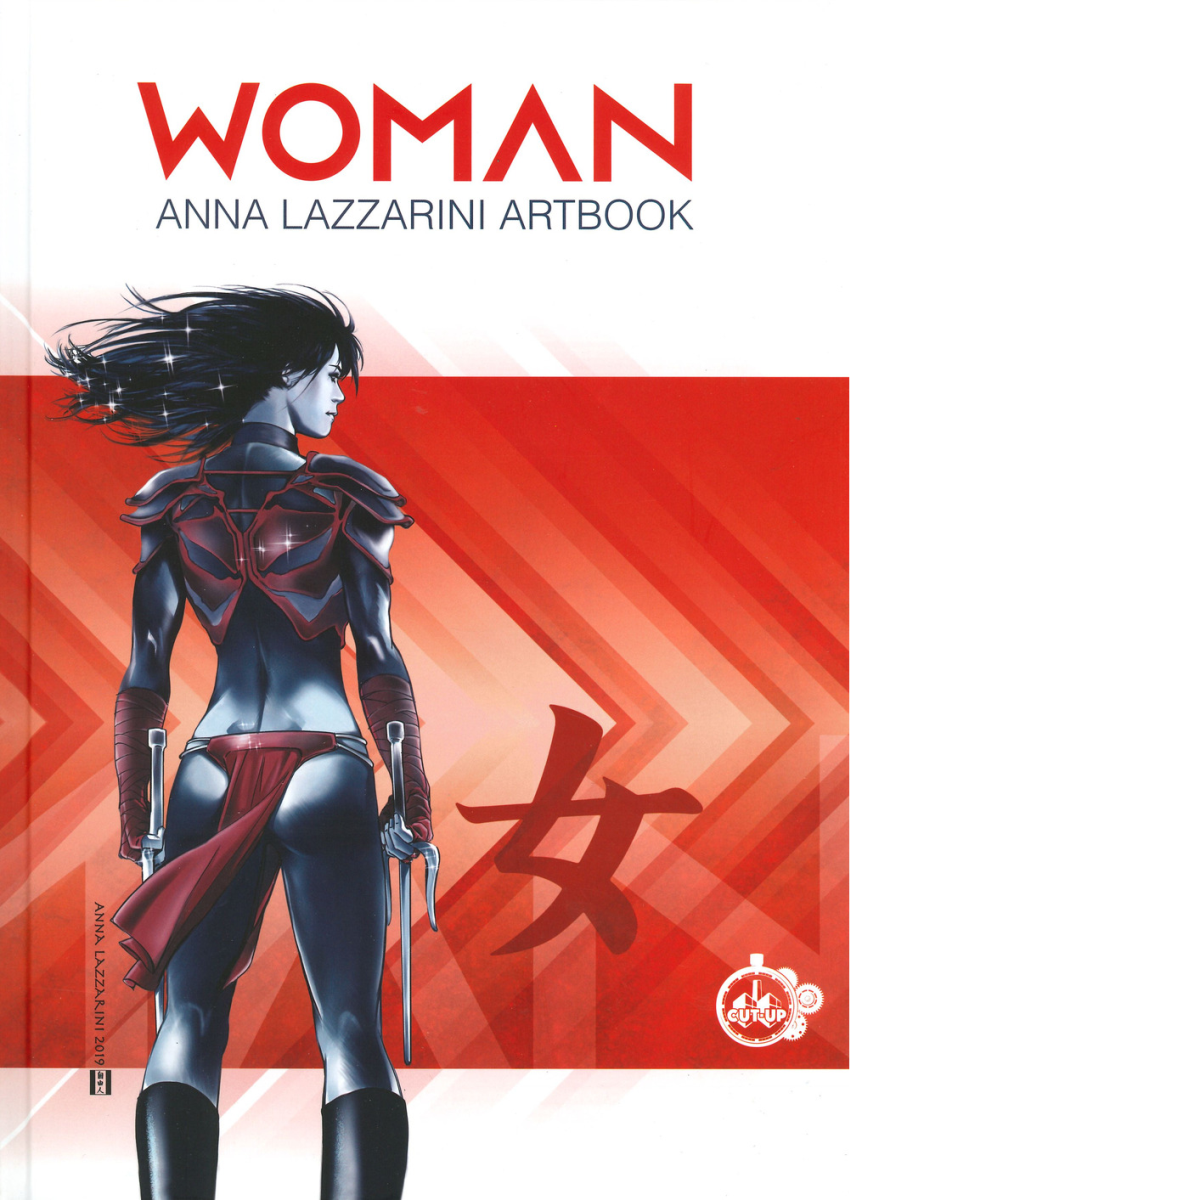 Woman. Anna Lazzarini artbook - AA.VV.- Cut-up,2020